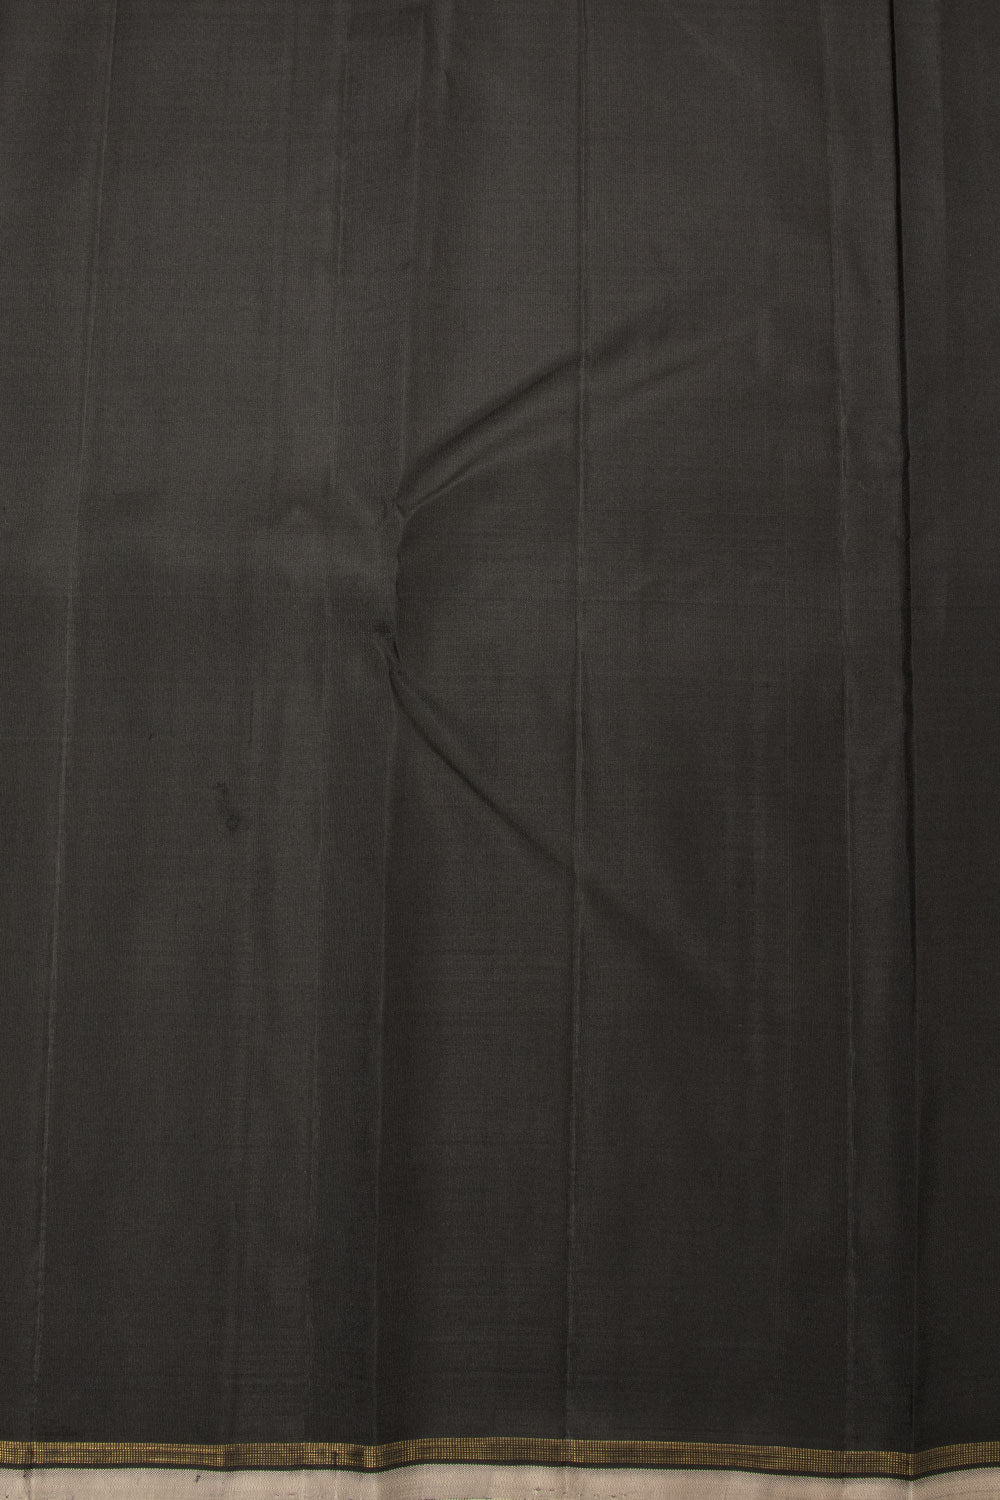 Black And Grey Half And Half Handloom Kanjivaram Silk Saree - Avishya